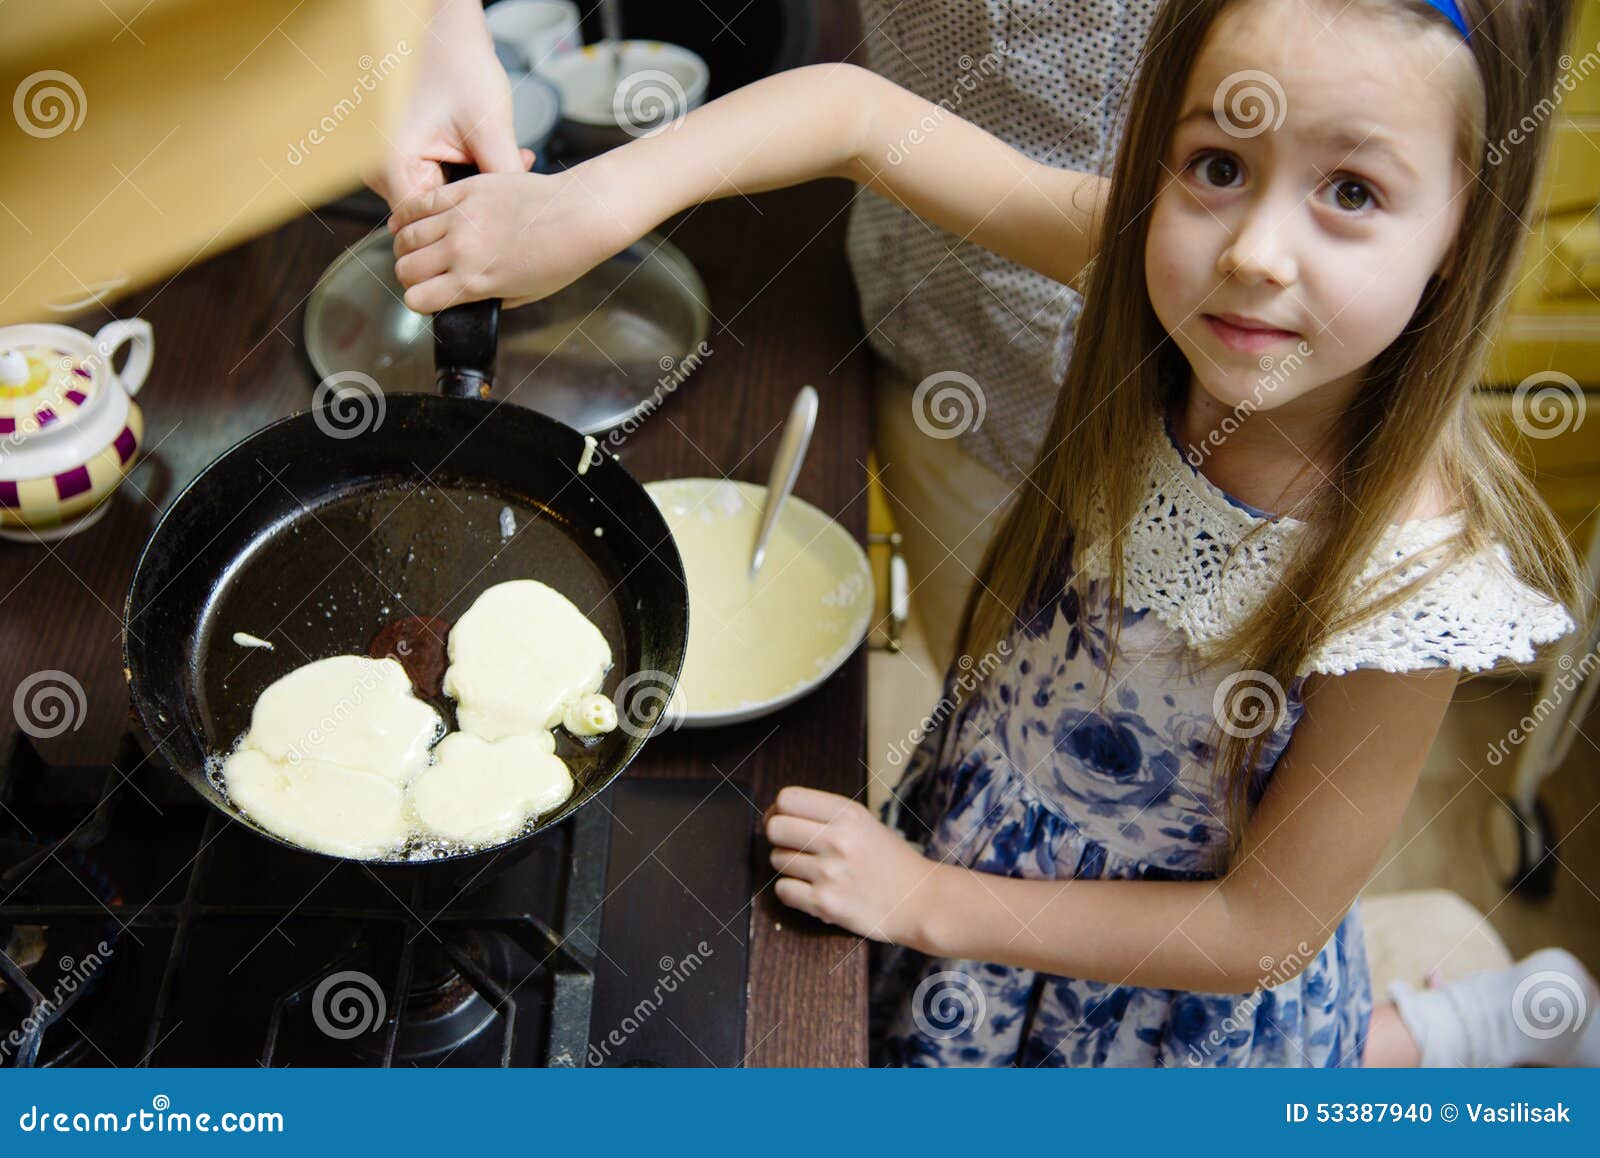 Мама готовит блины. Дети пекут блины. Мама с дочкой пекут блины. Девушка печет блины. Маленькая девочка готовит блины.